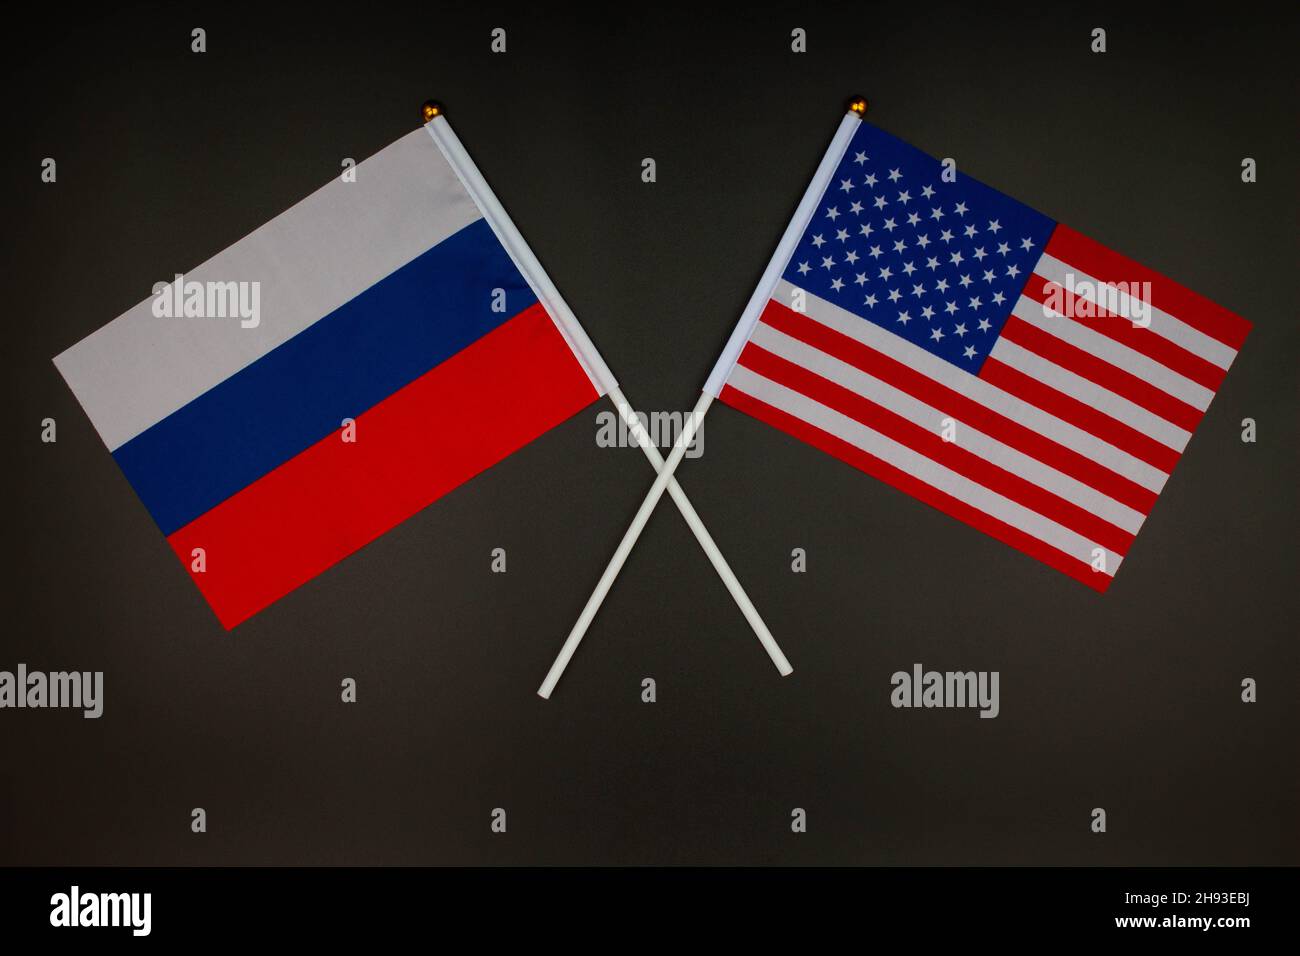 Die russische Flagge und die US-Flagge kreuzen sich auf schwarzem Hintergrund. Russland gegen USA. Treffen zwischen den Präsidenten Russlands und der Vereinigten Staaten Stockfoto